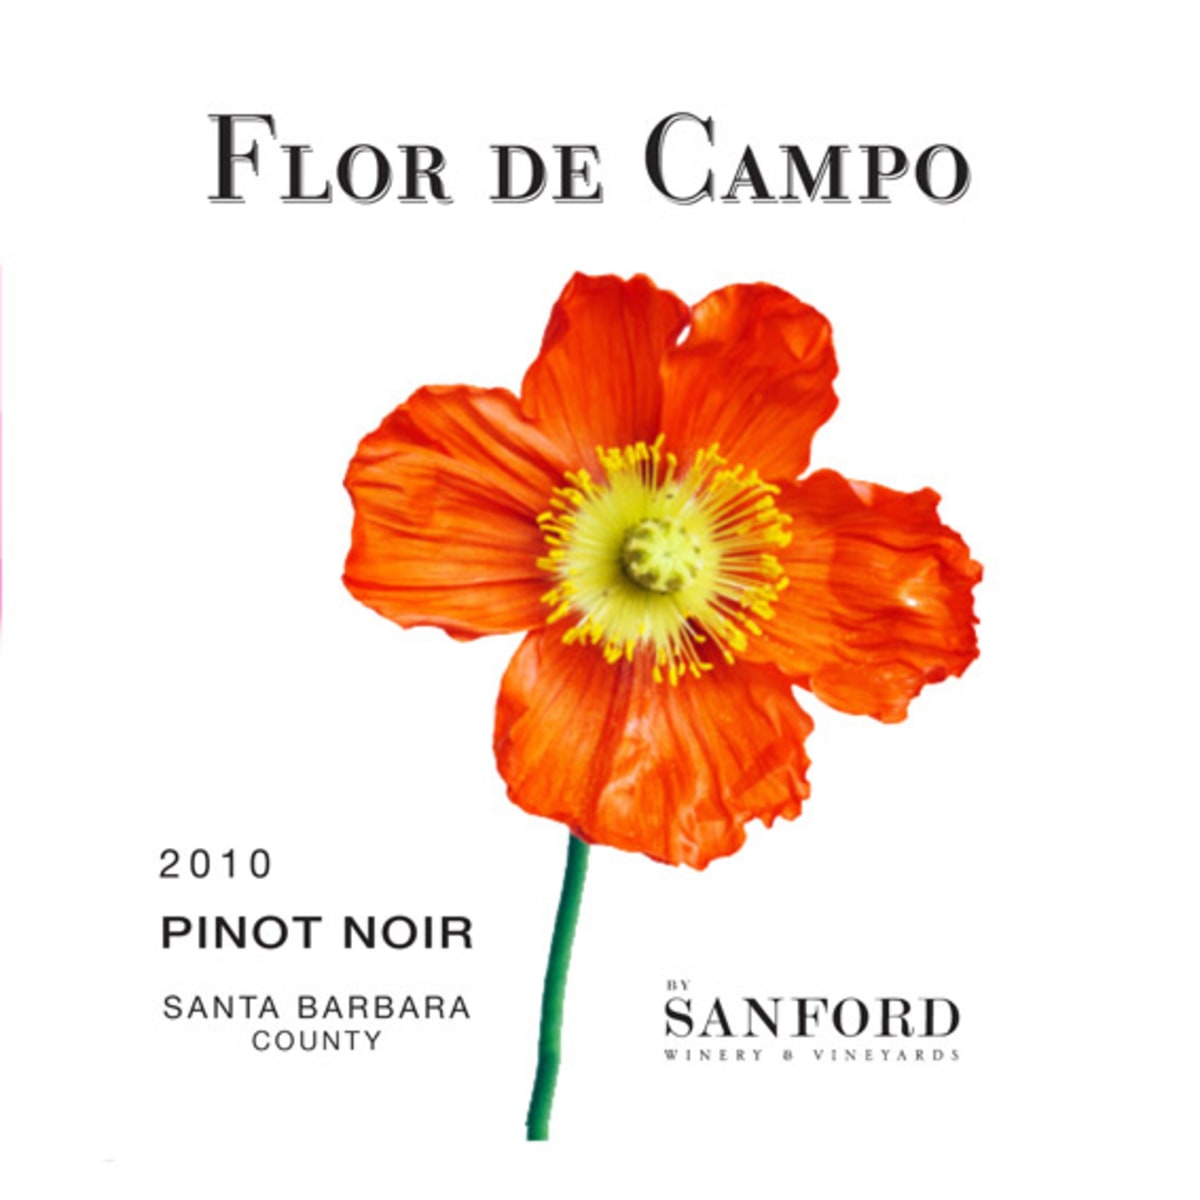 SANFORD FLOR DE CAMPO PINOT NOIR